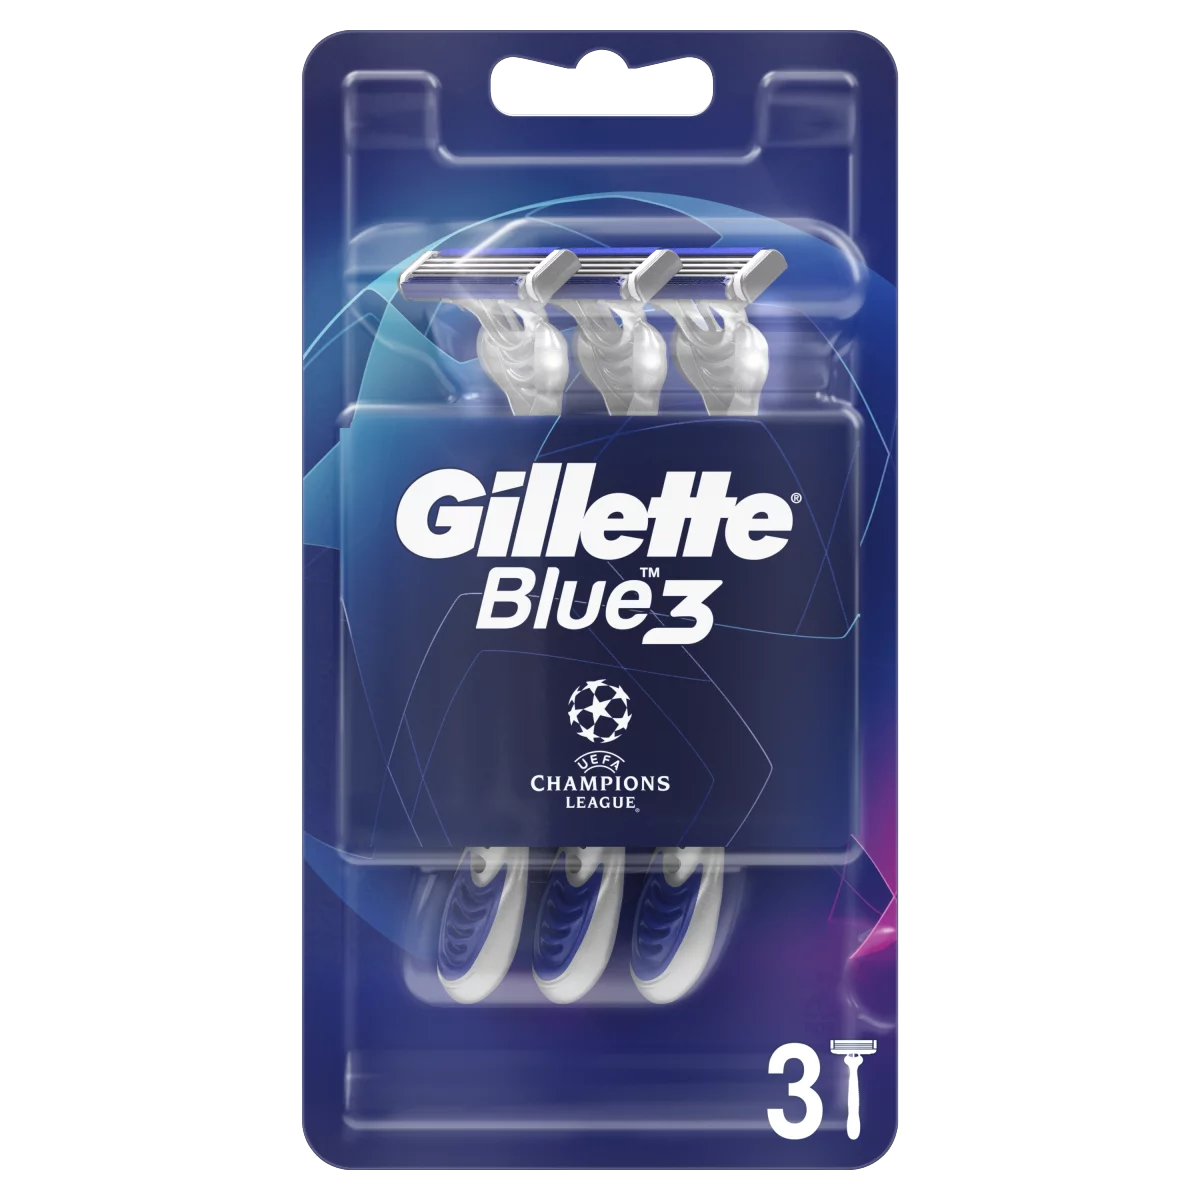 Gillette Blue3 Comfort Eldobható Férfi Borotva, 3 Darab